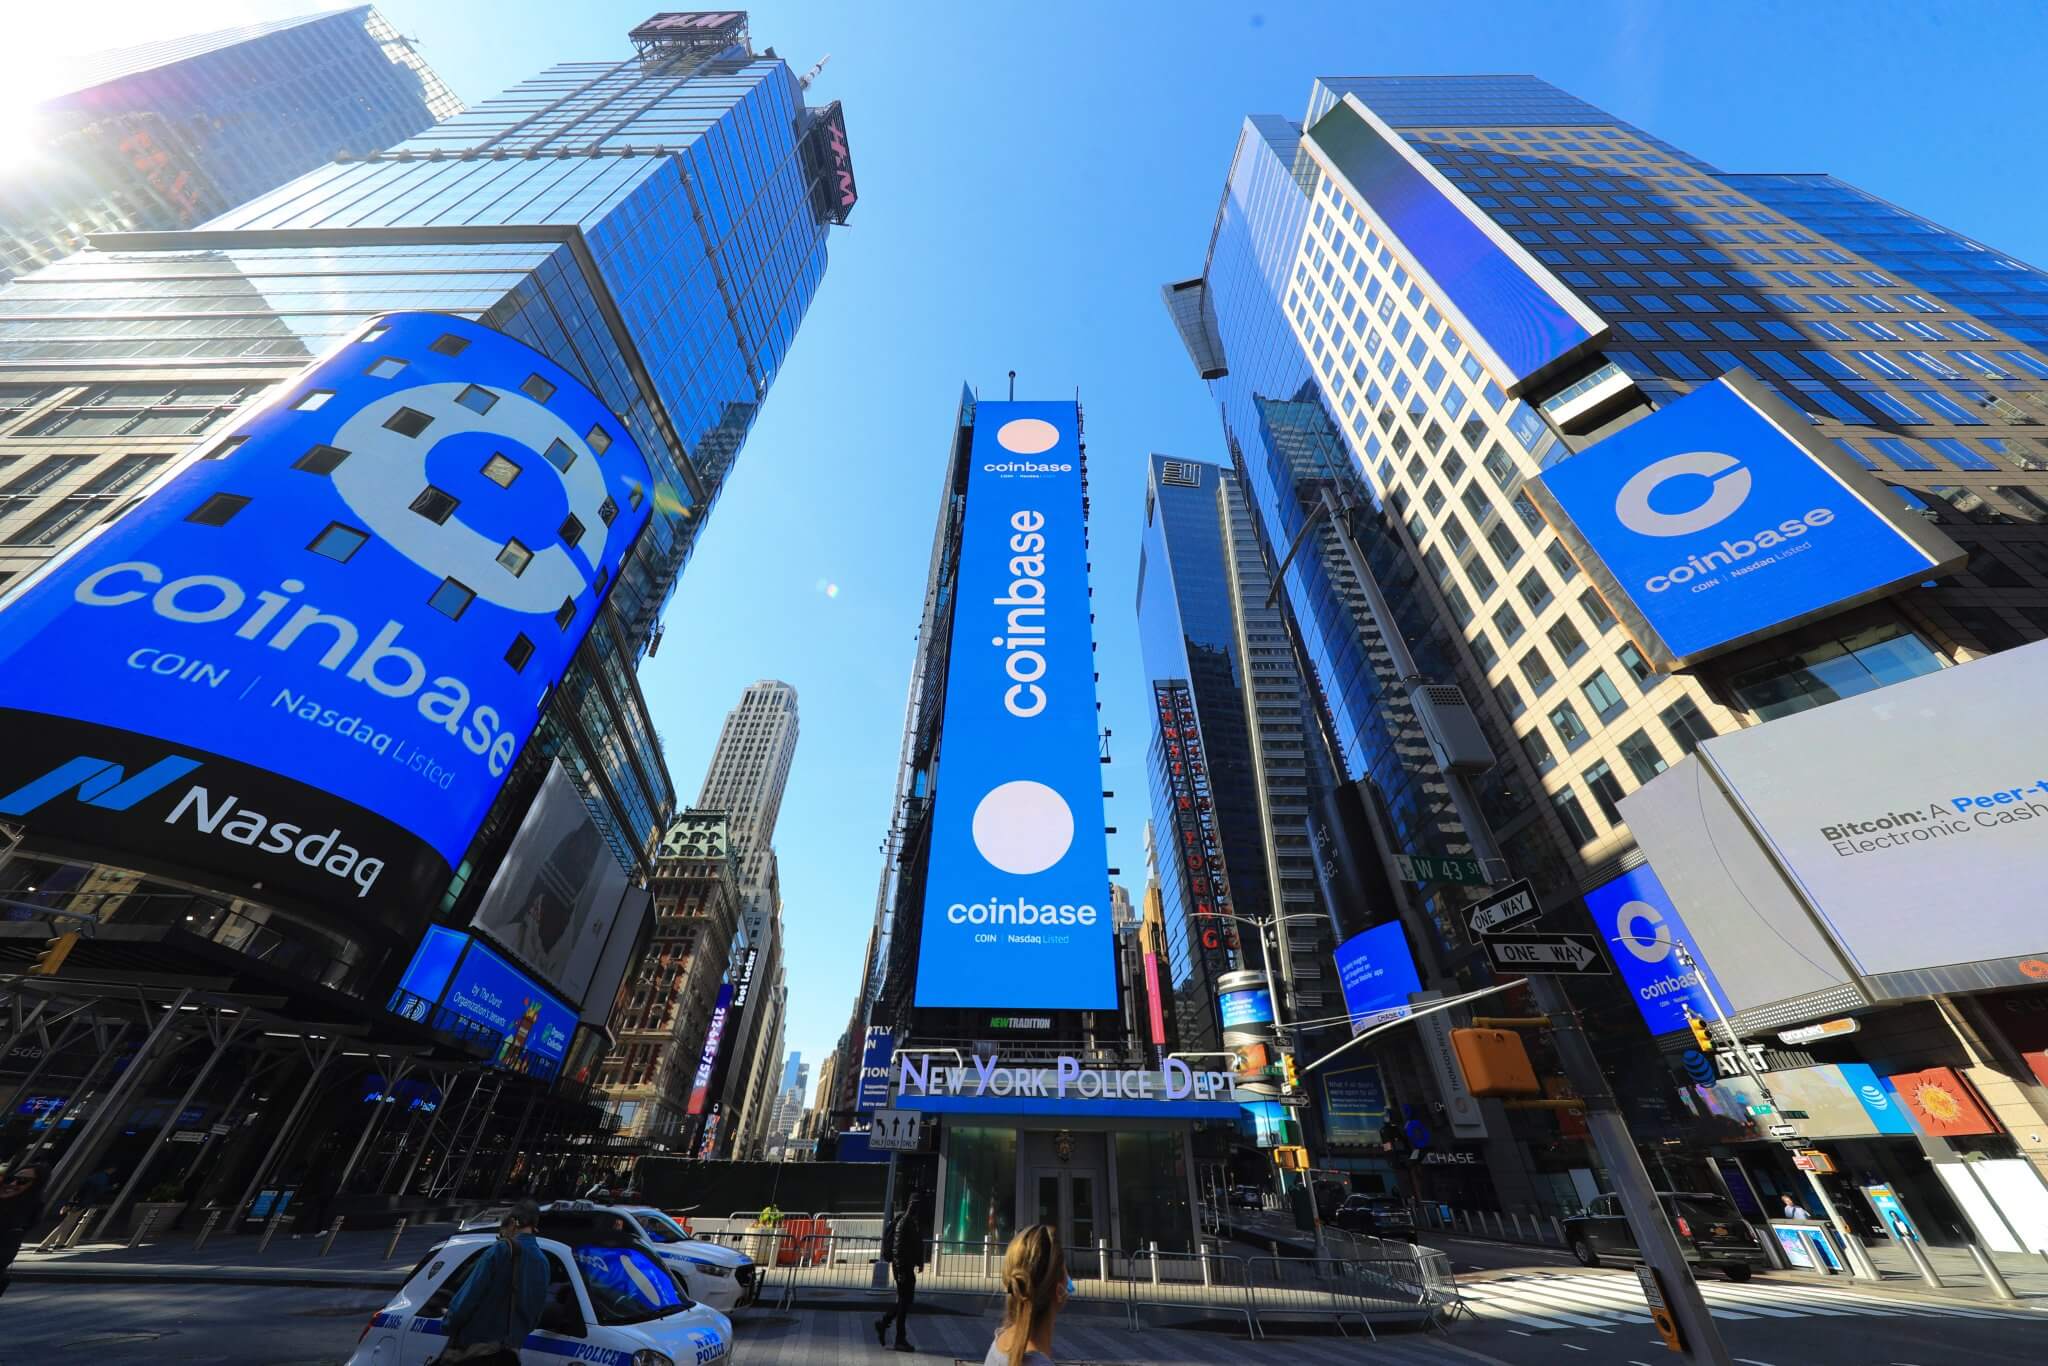 Руководитель Coinbase рассказал о массовой критике идеи запуска криптовалютной биржи. Логотип Coinbase на Манхэттене. Фото.